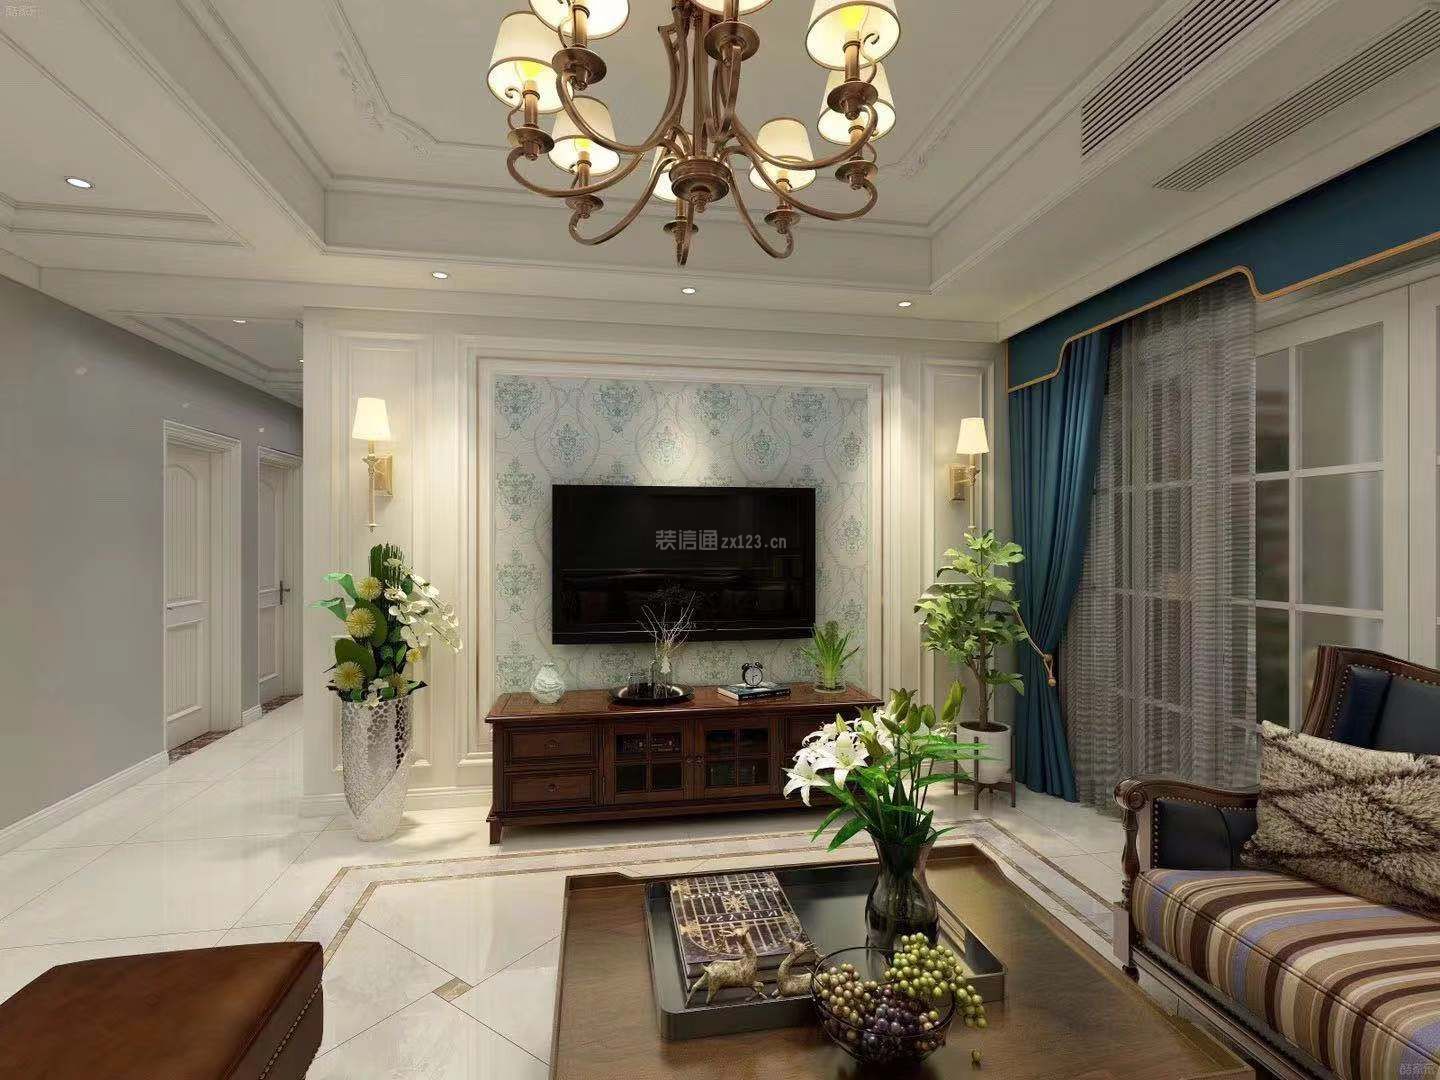  2020美式风格客厅设计效果图  美式风格客厅图 美式风格客厅装修图